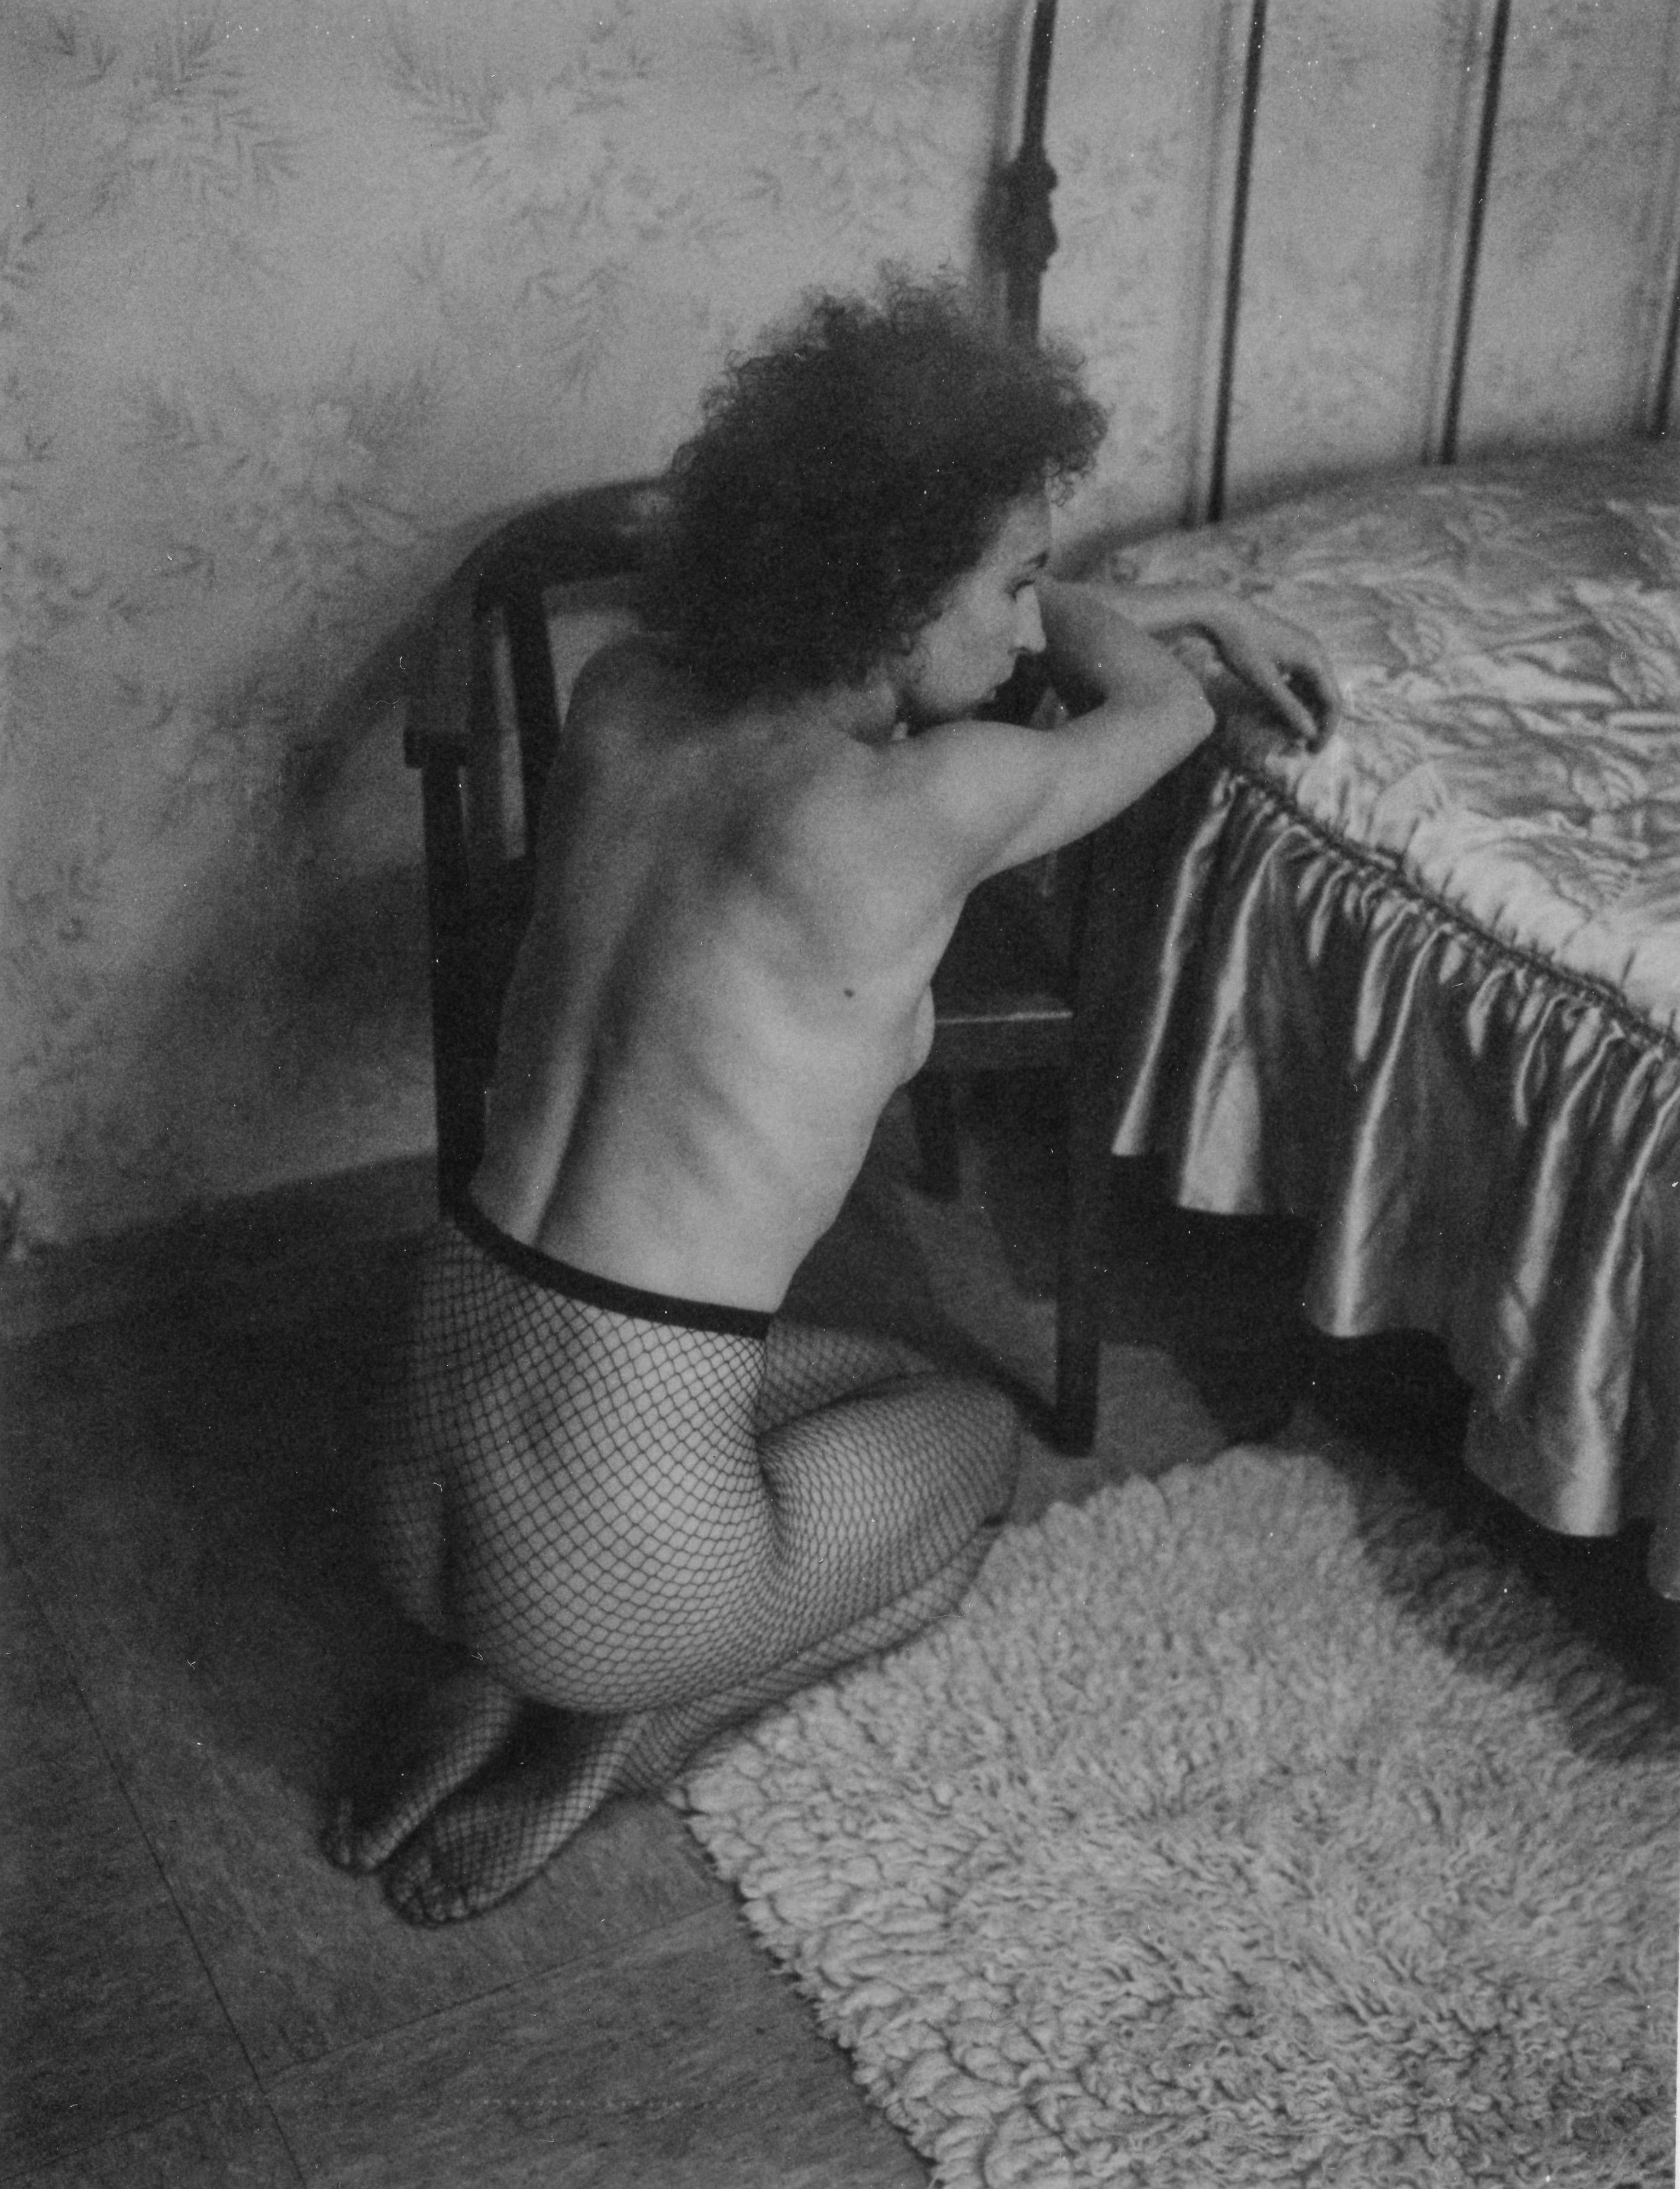 Dust - Contemporary, Nude, Women, Polaroid, 21st Century